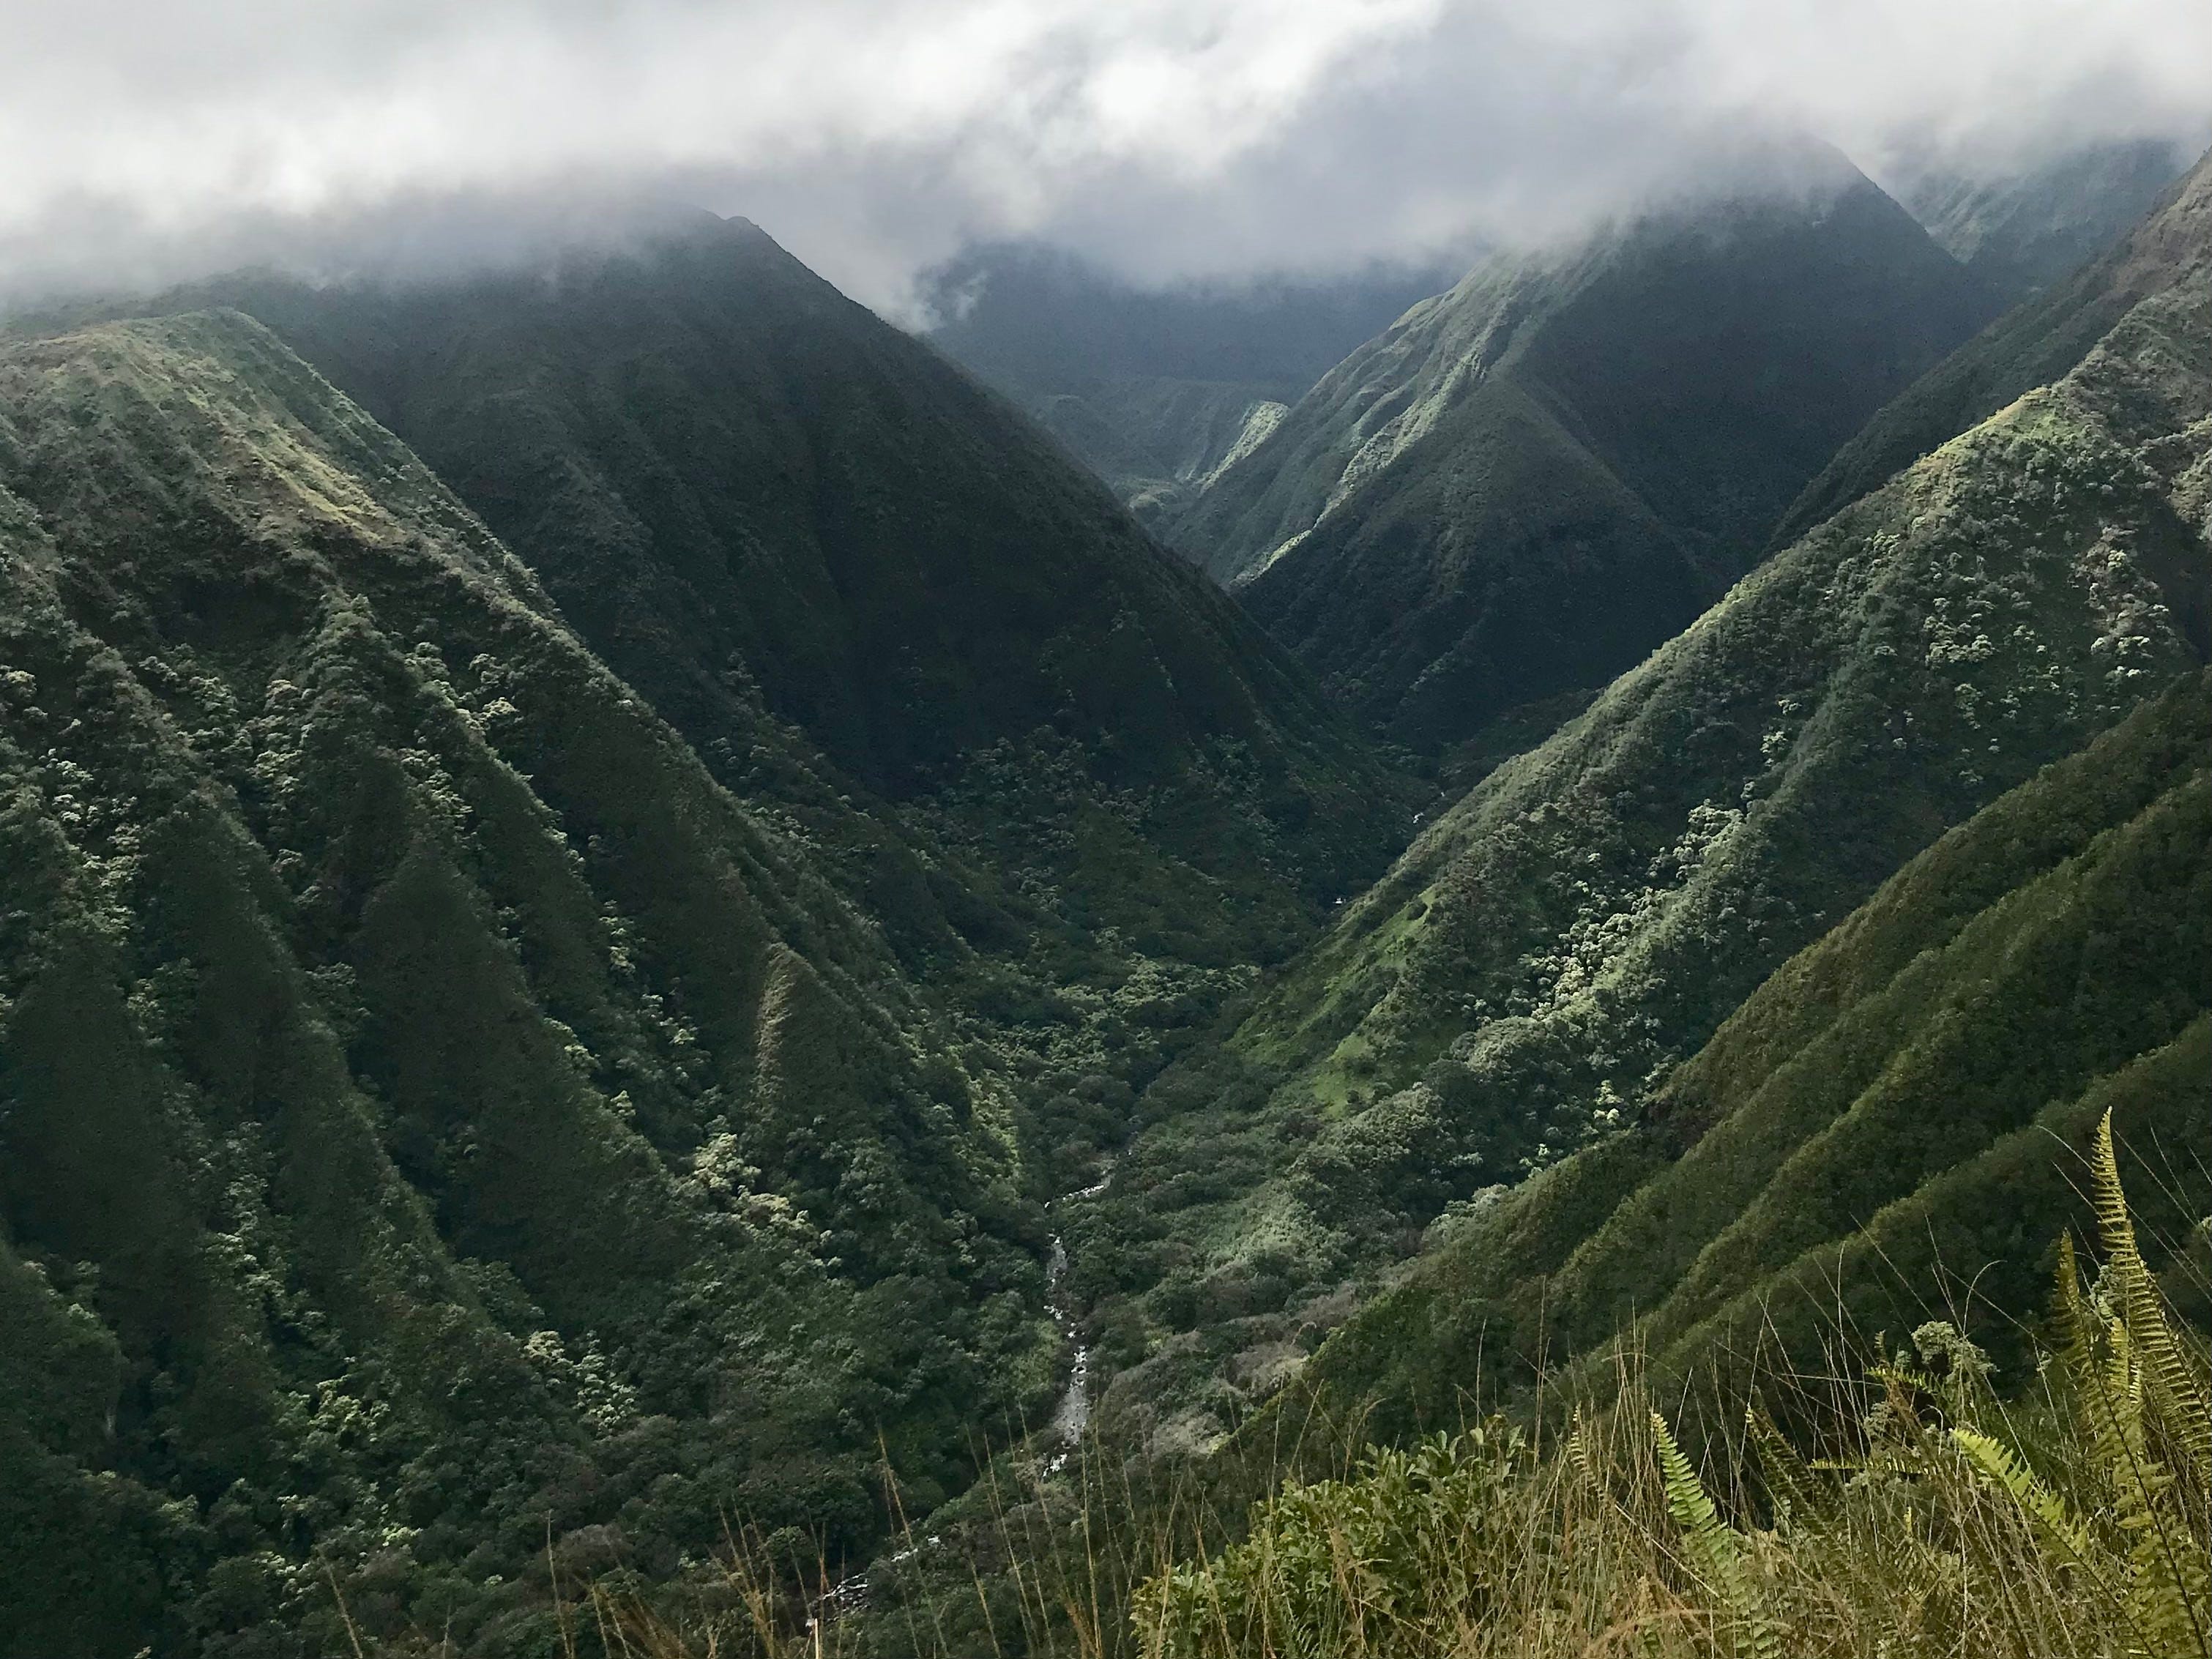 Wanderung auf dem Waihee Ridge Trail in Hawaii, grüne Berge mit Wolken darüber